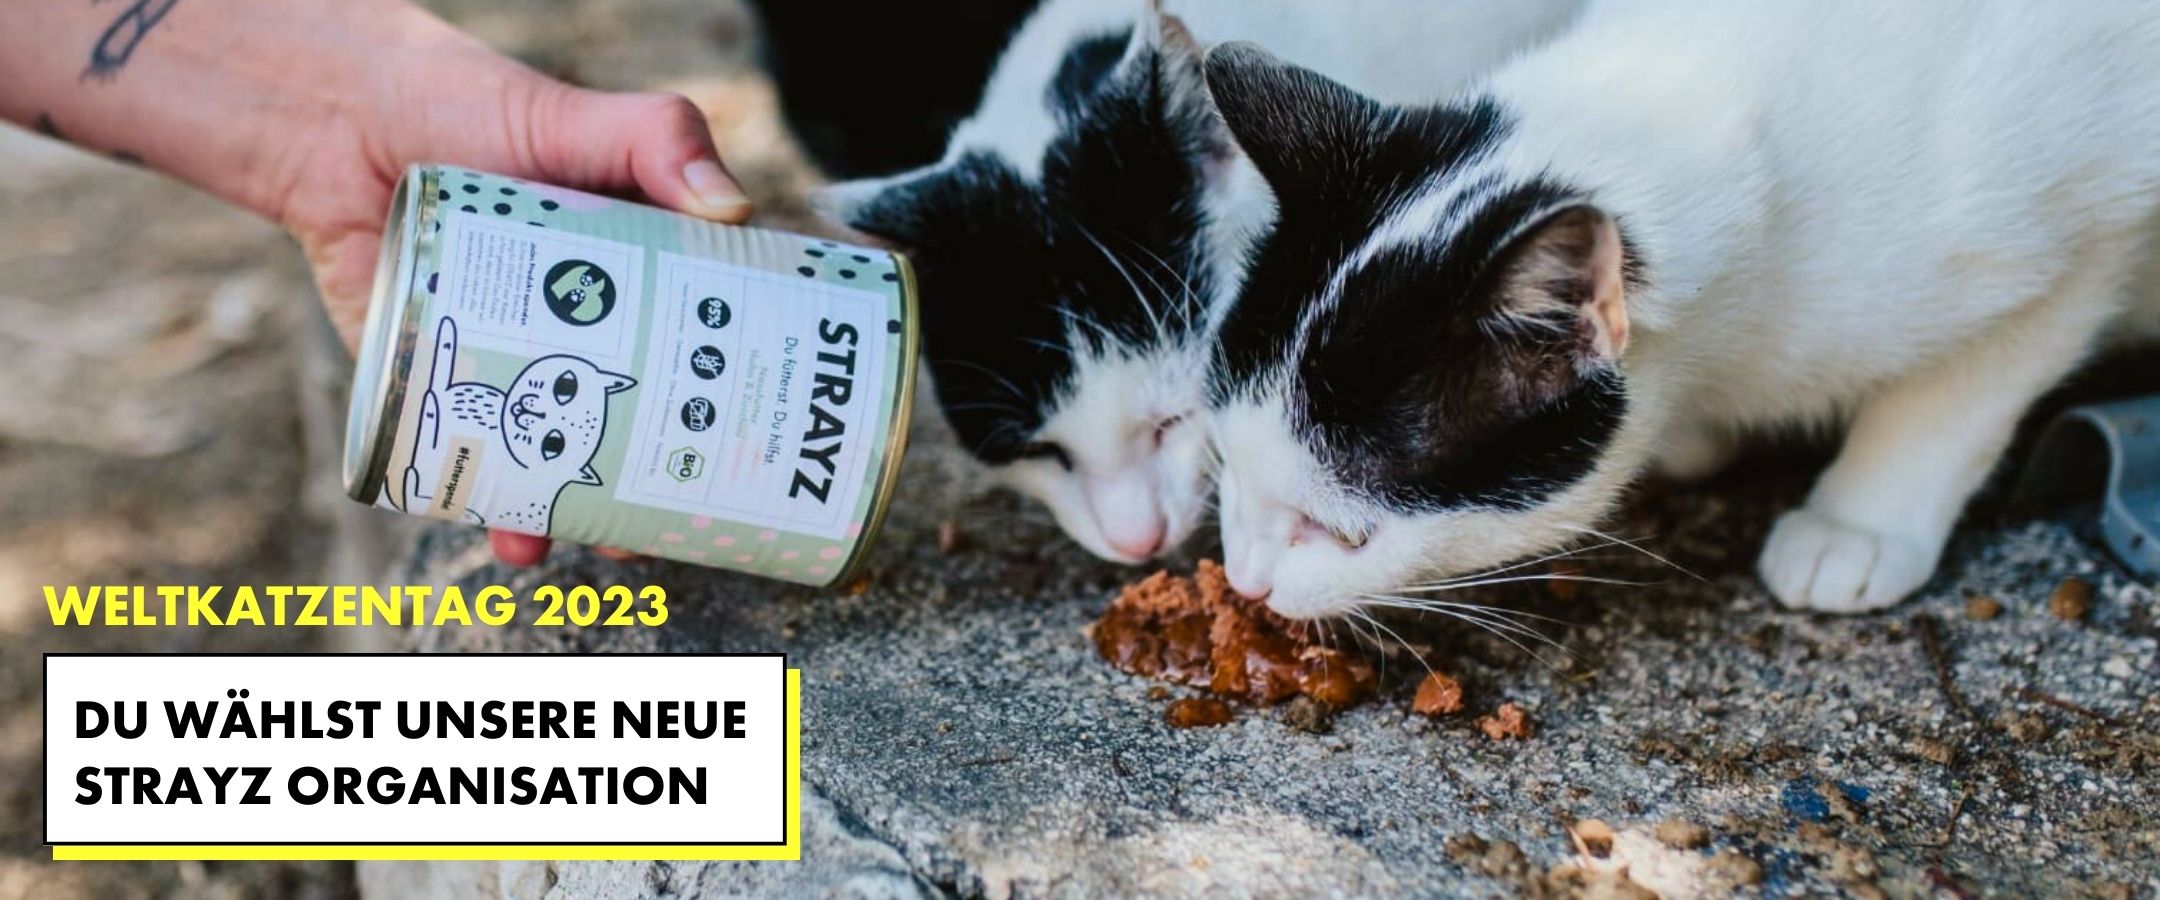 STRAYZ sucht eine neue Tierschutzorganisation zum Weltkatzentag 2023. Auf diesem Bild werden Straßenkatzen mit dem Futter von STRAYZ Bio Katzenfutter gefüttert.